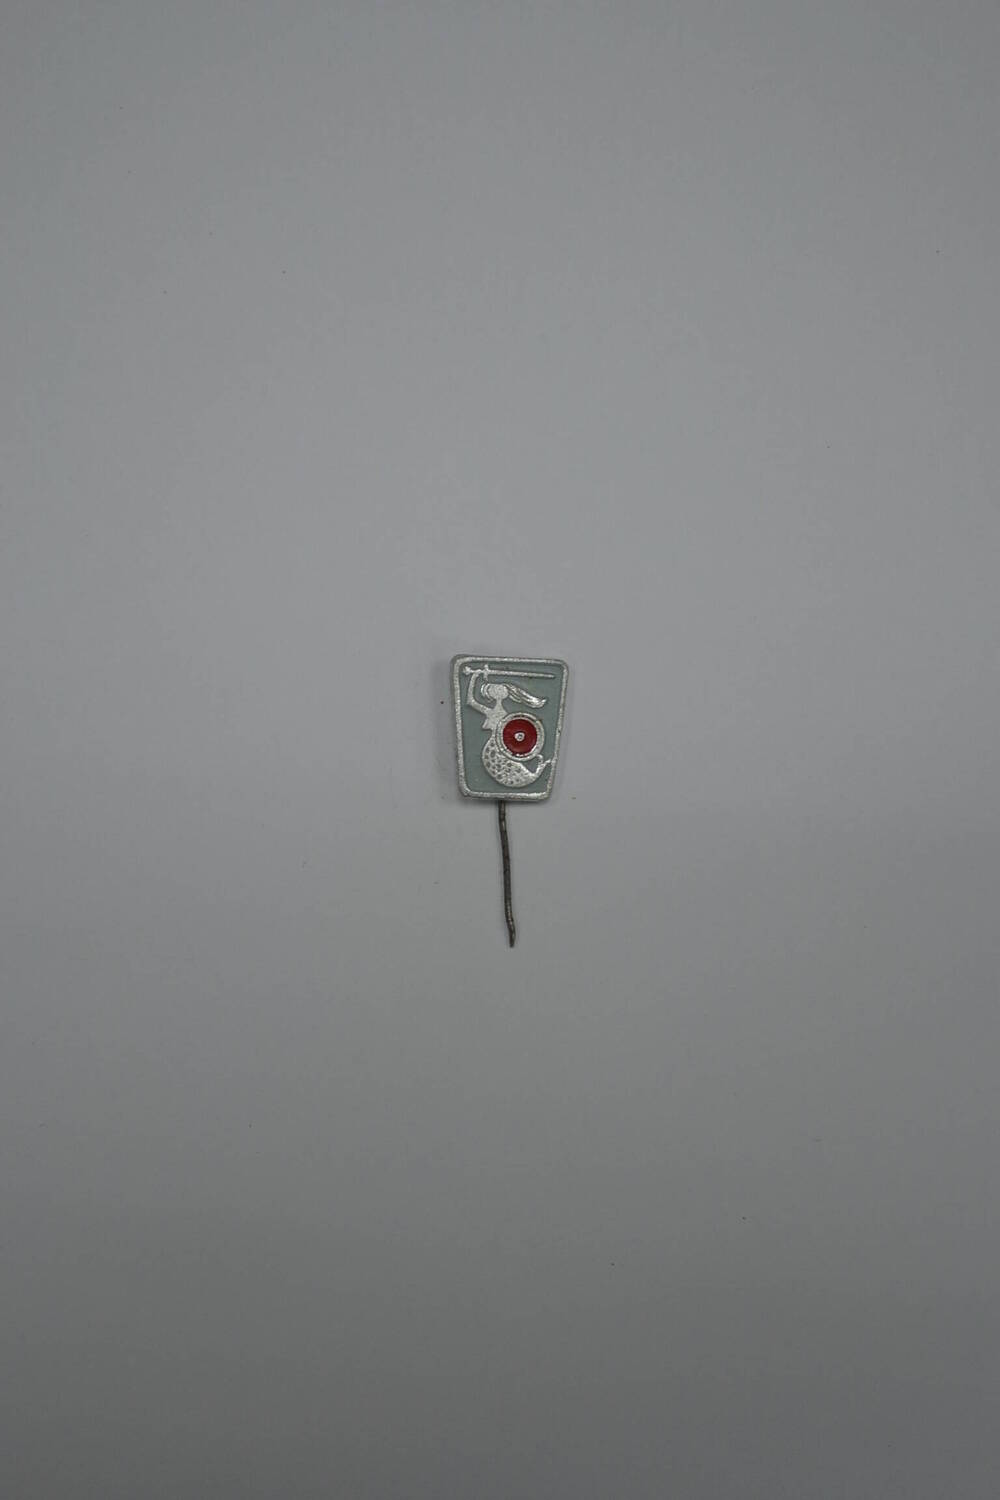 Значок на игле с изображением русалки с мечом и щитом (герб Варшавы). 1970-е гг.